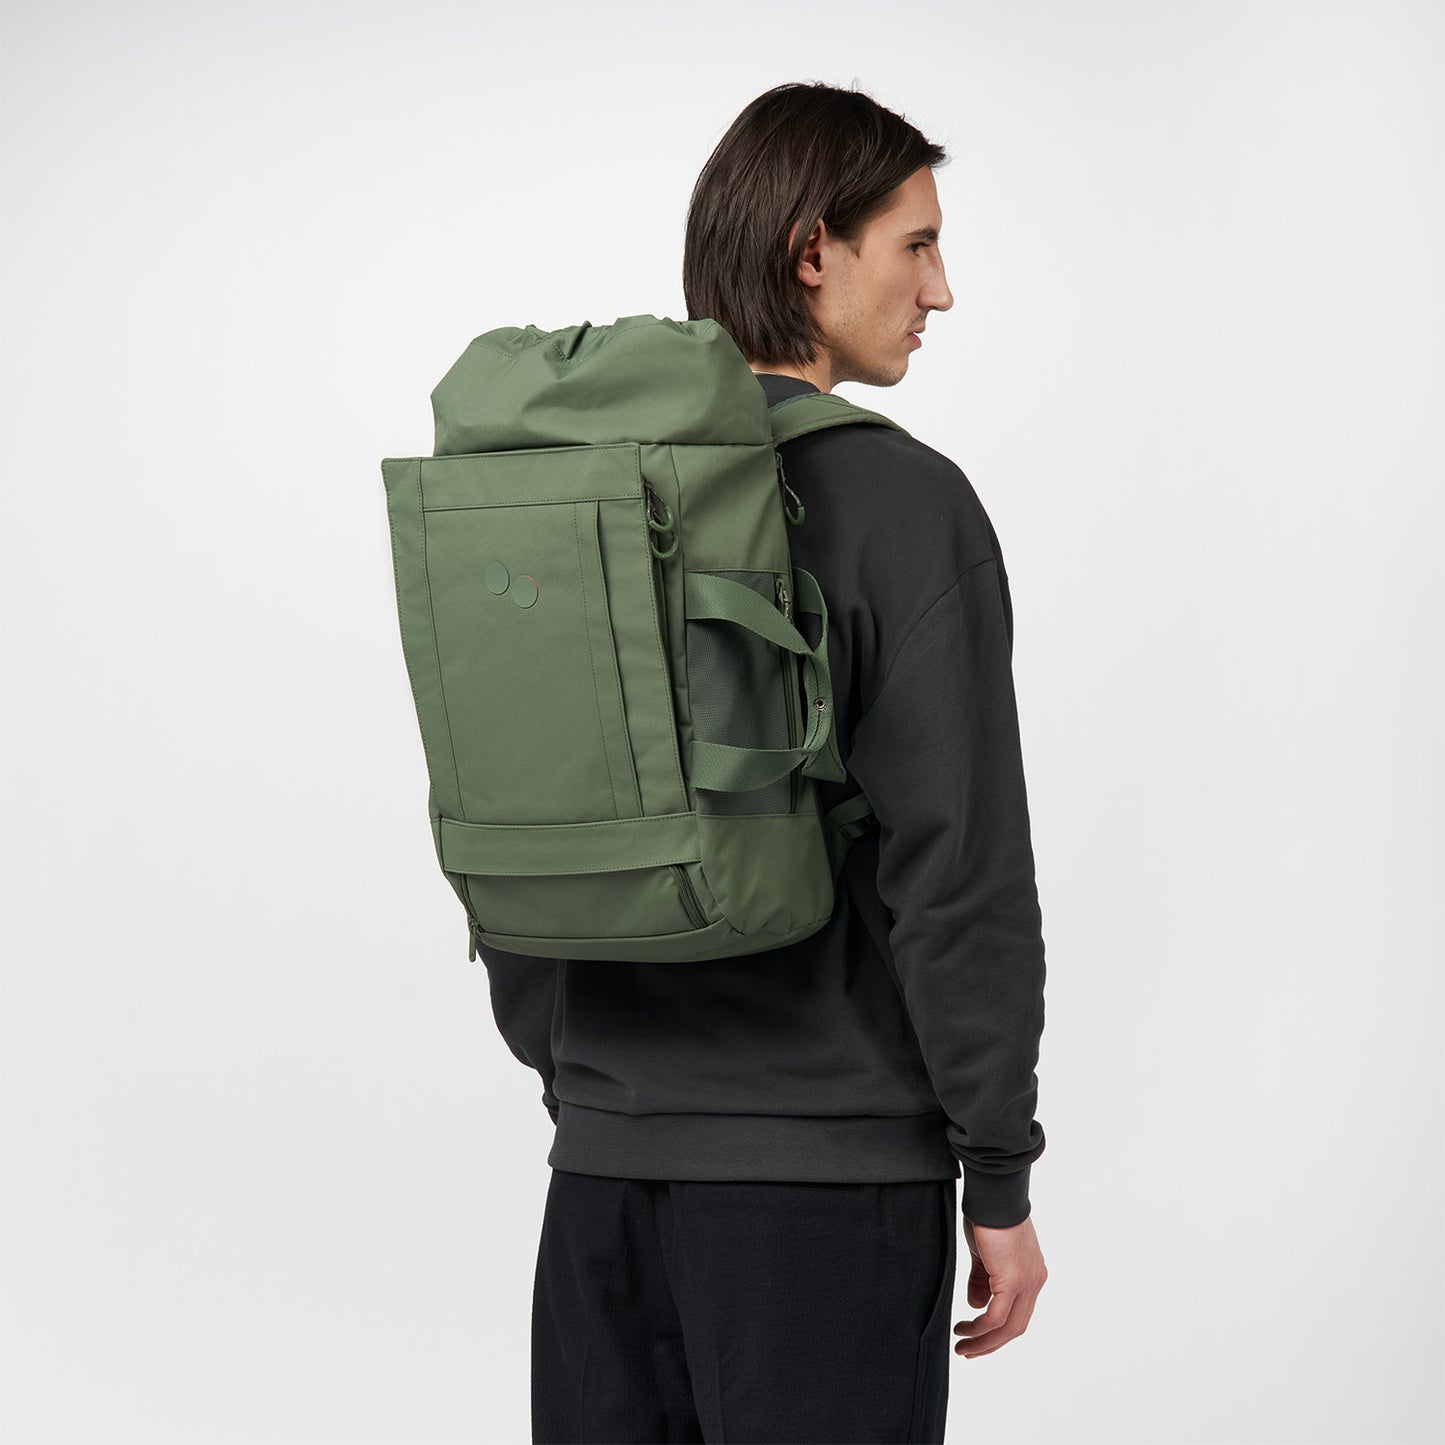 pinqponq-backpack-Blok-Medium-Forester-Olive-model-front